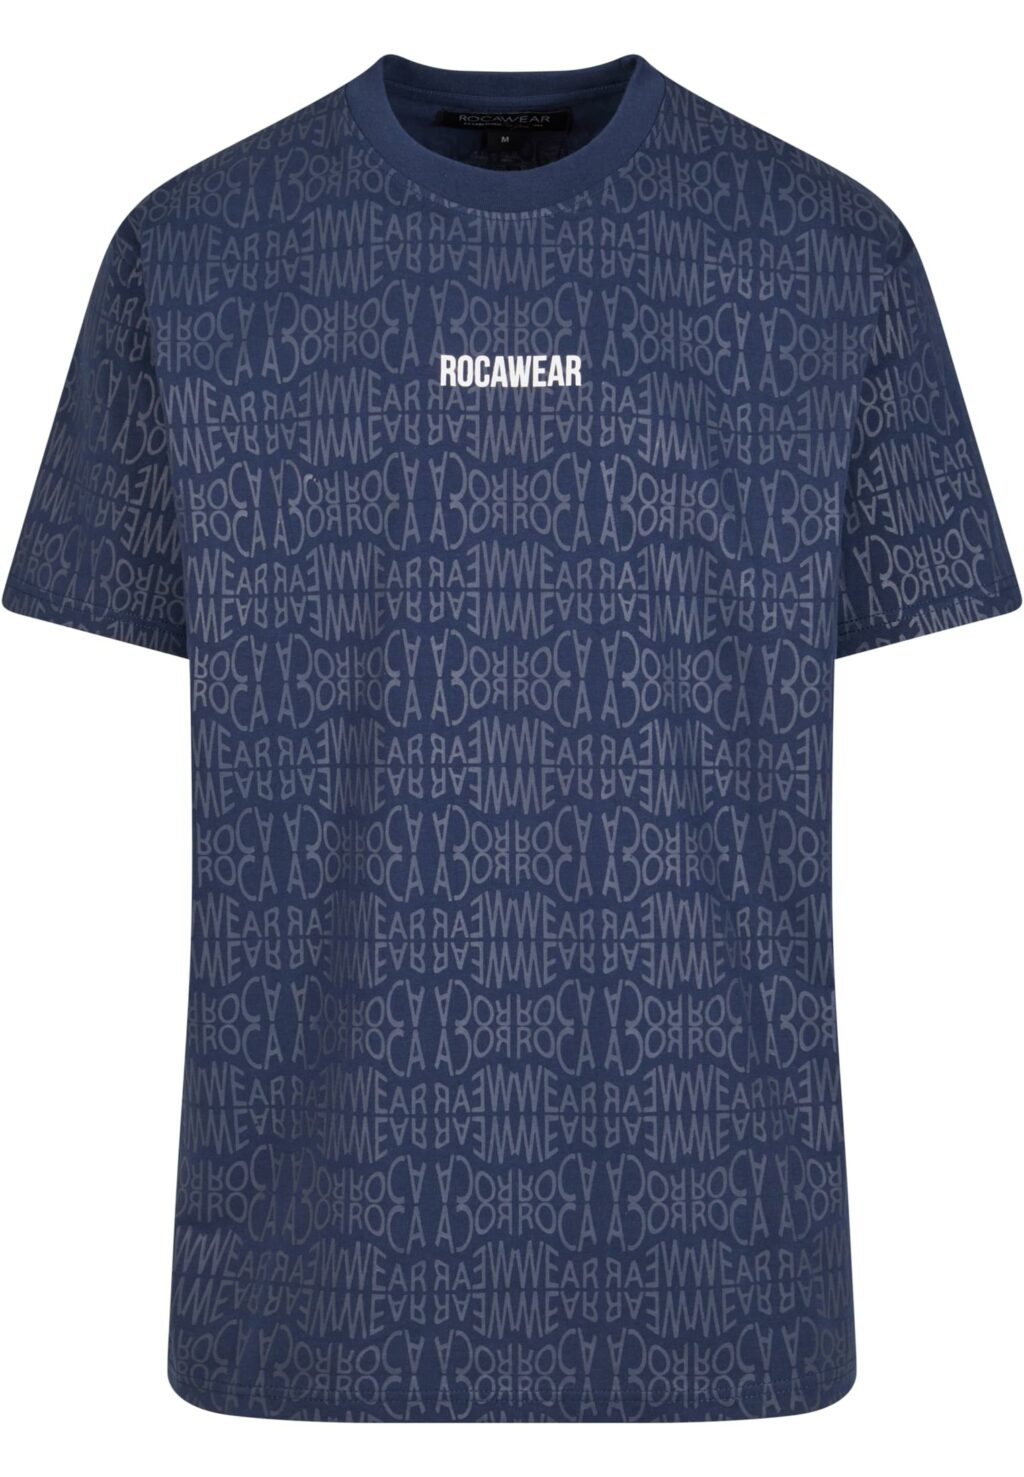 Rocawear Tshirt Roca blue RWTS095